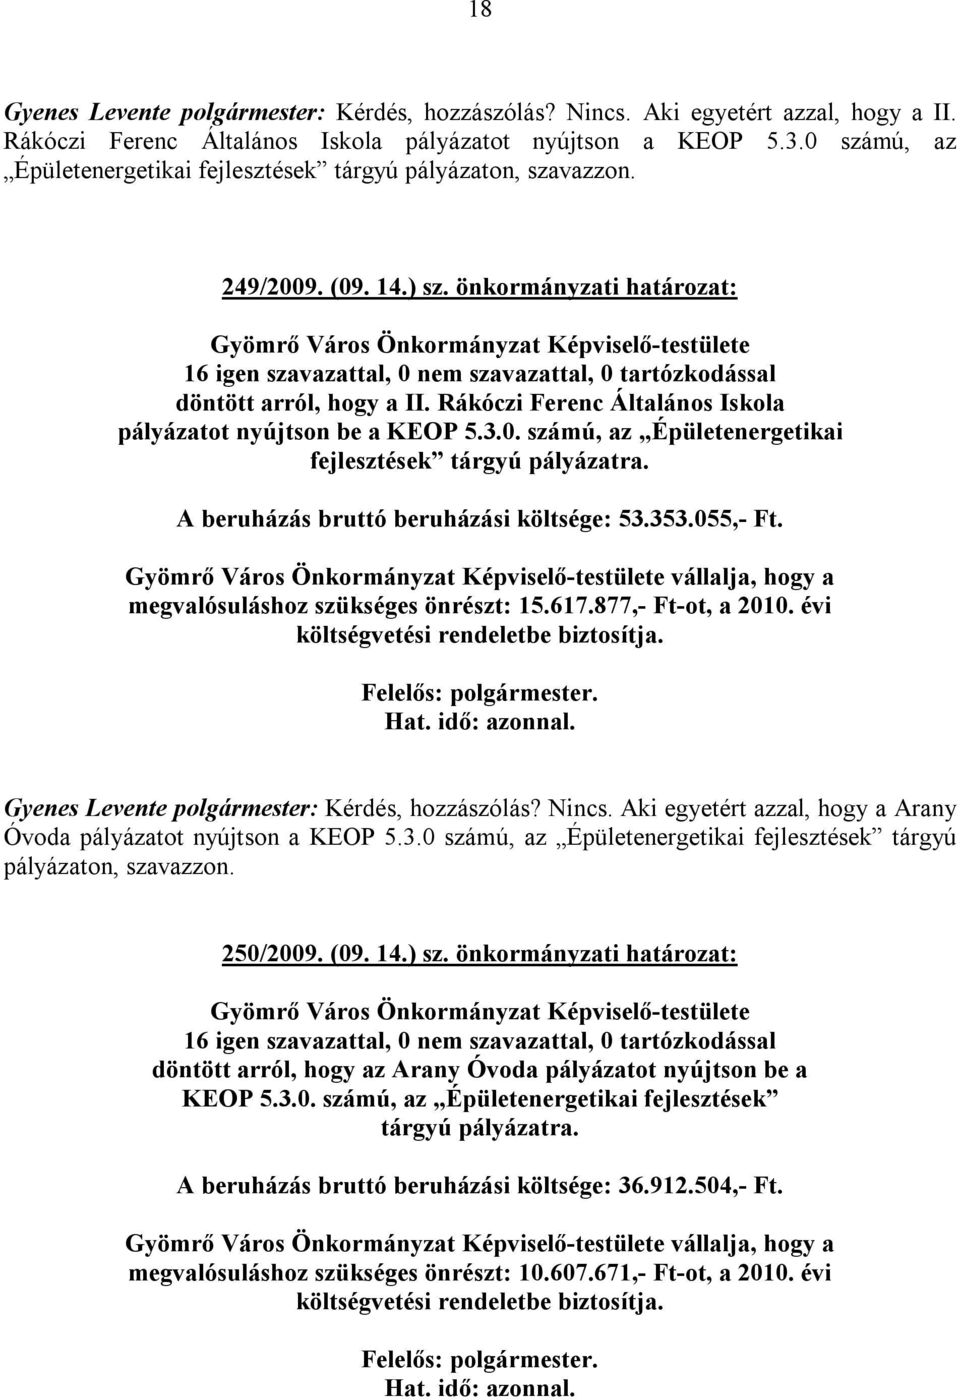 Rákóczi Ferenc Általános Iskola pályázatot nyújtson be a KEOP 5.3.0. számú, az Épületenergetikai fejlesztések tárgyú pályázatra. A beruházás bruttó beruházási költsége: 53.353.055,- Ft.